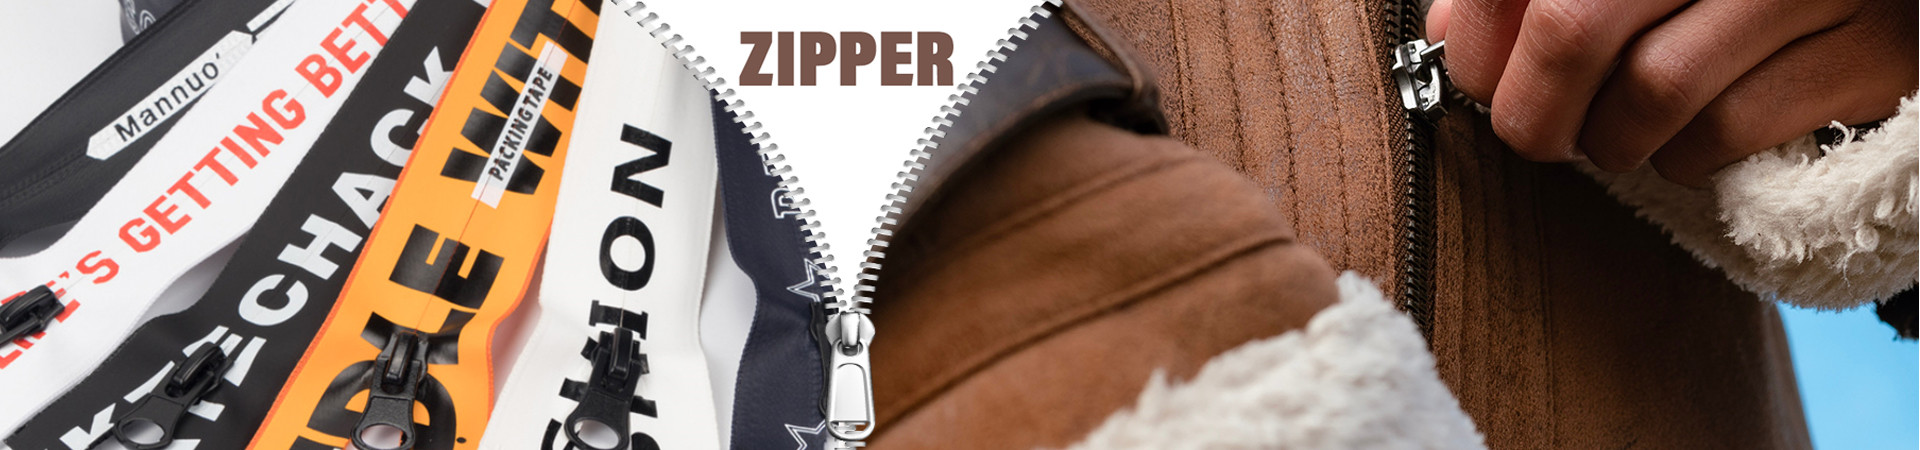 Zipper manufacturer